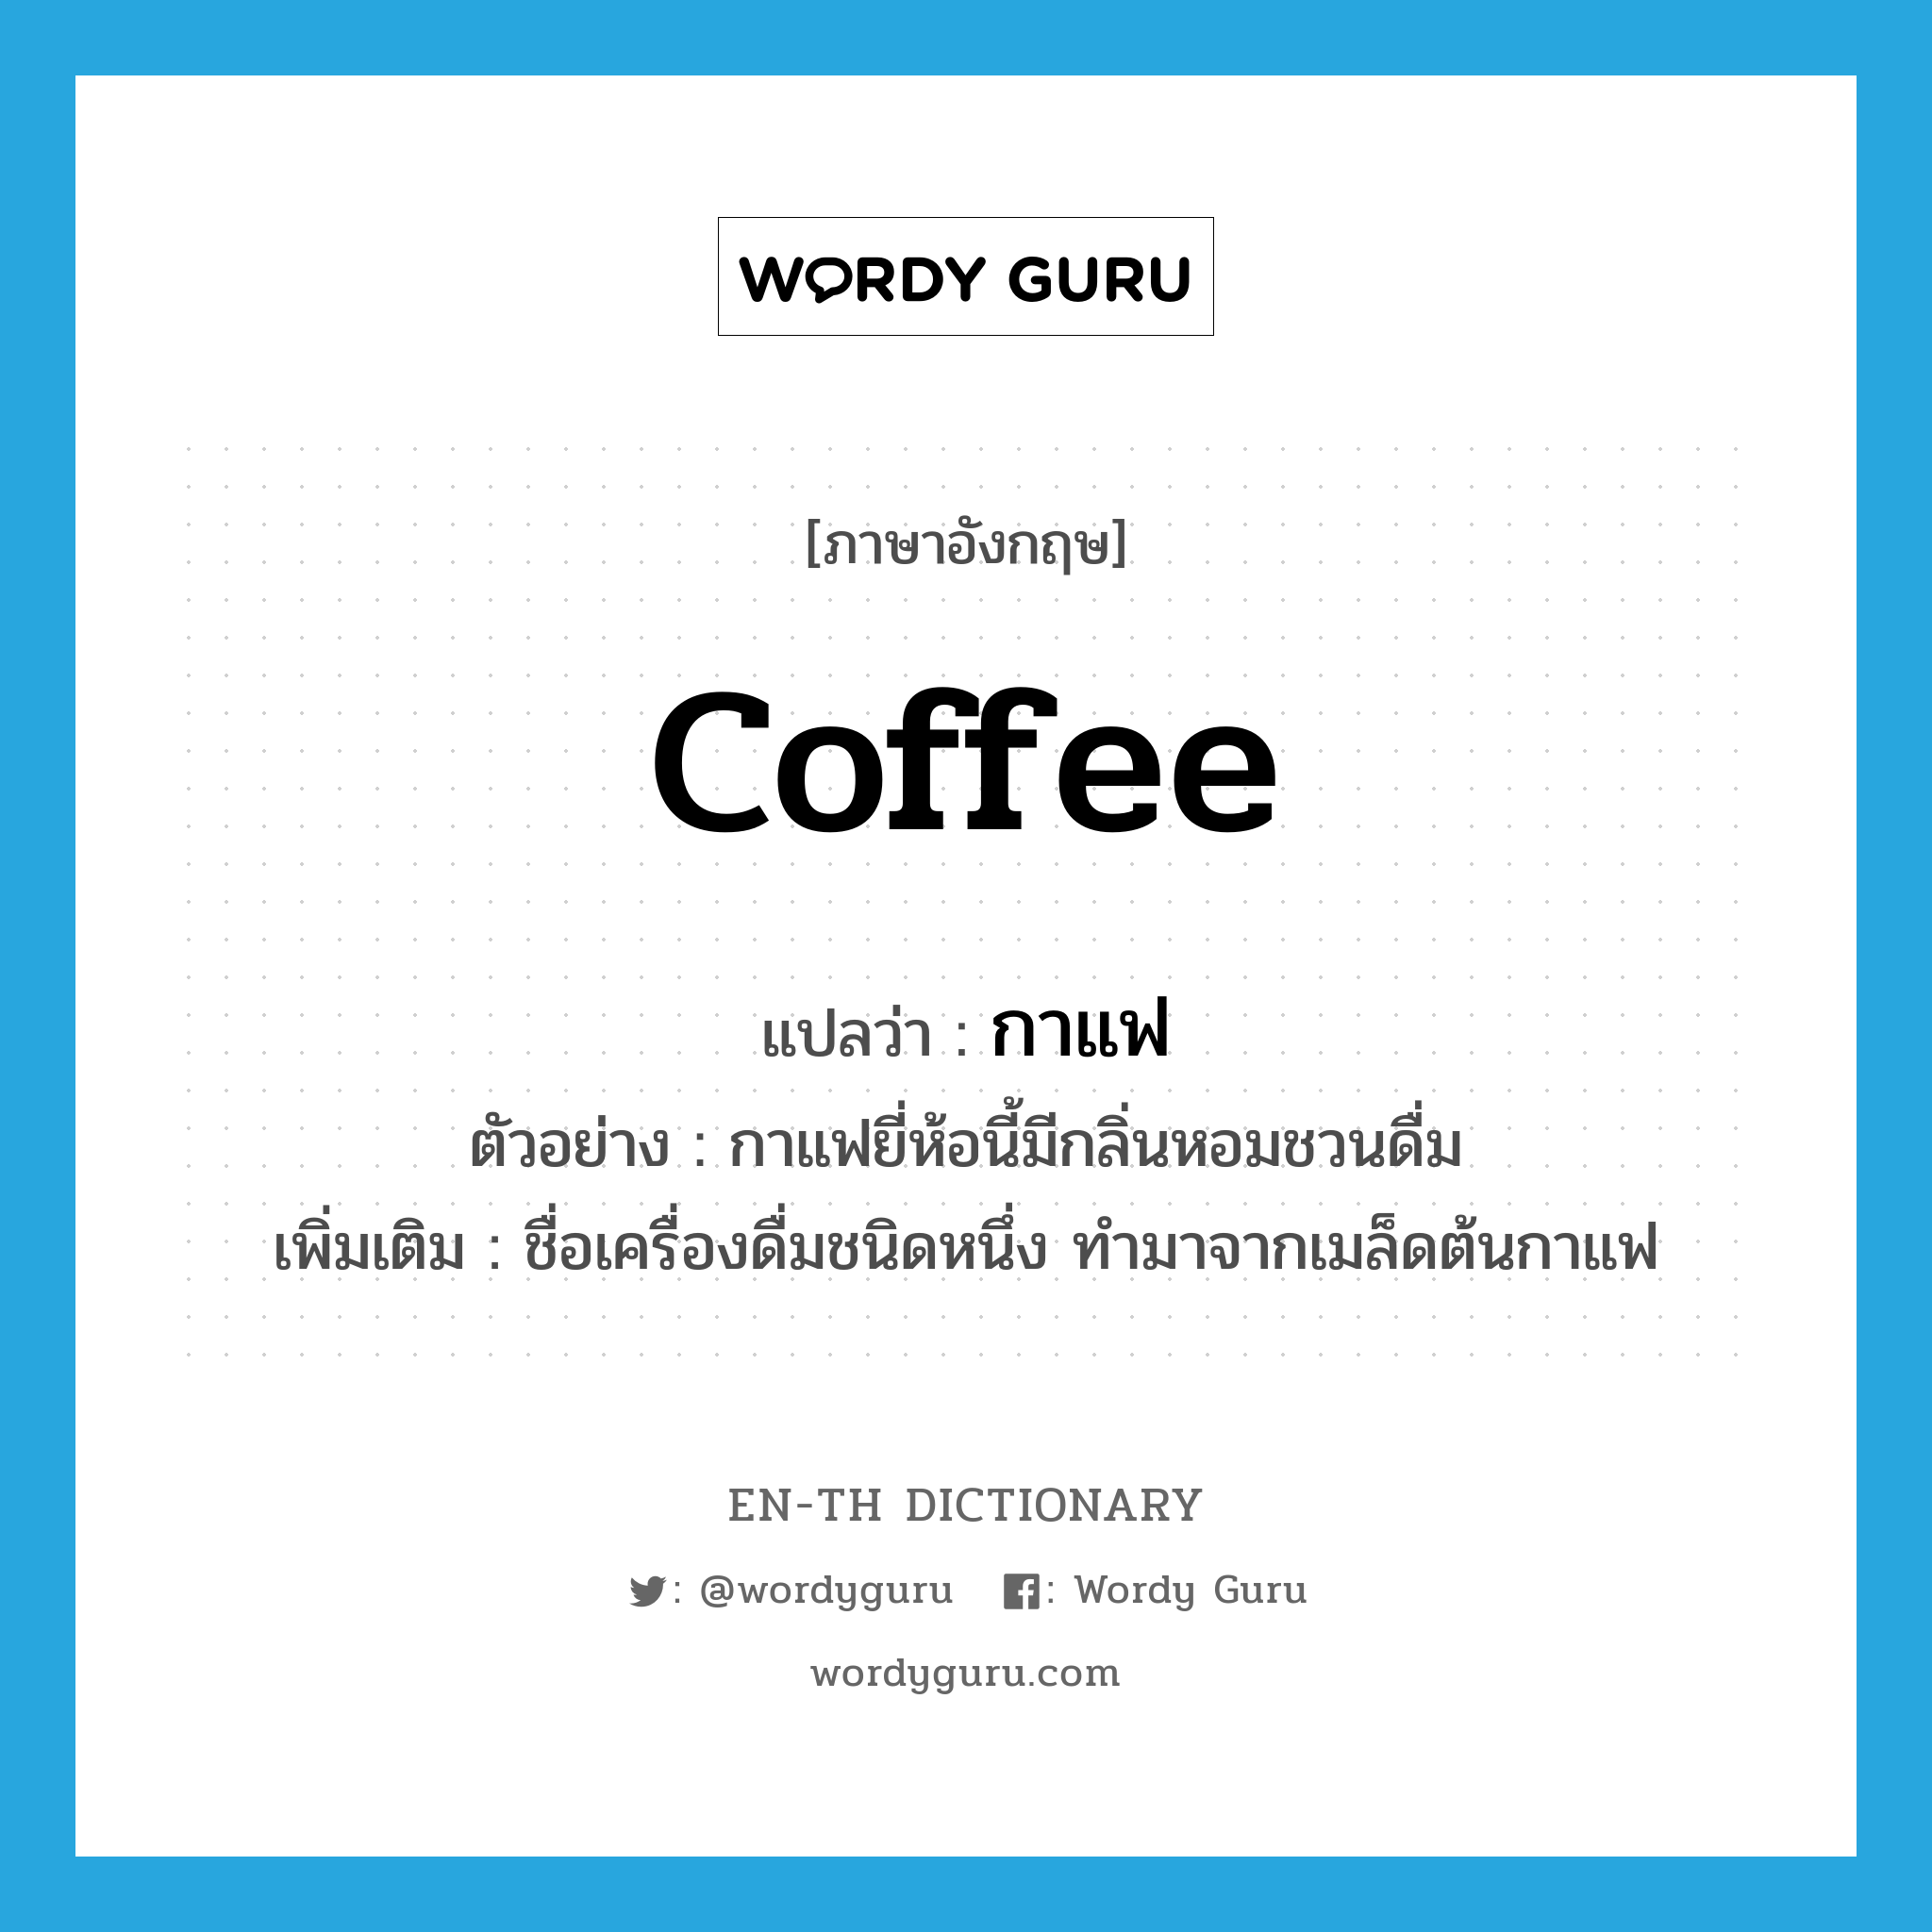 กาแฟ ภาษาอังกฤษ?, คำศัพท์ภาษาอังกฤษ กาแฟ แปลว่า coffee ประเภท N ตัวอย่าง กาแฟยี่ห้อนี้มีกลิ่นหอมชวนดื่ม เพิ่มเติม ชื่อเครื่องดื่มชนิดหนึ่ง ทำมาจากเมล็ดต้นกาแฟ หมวด N